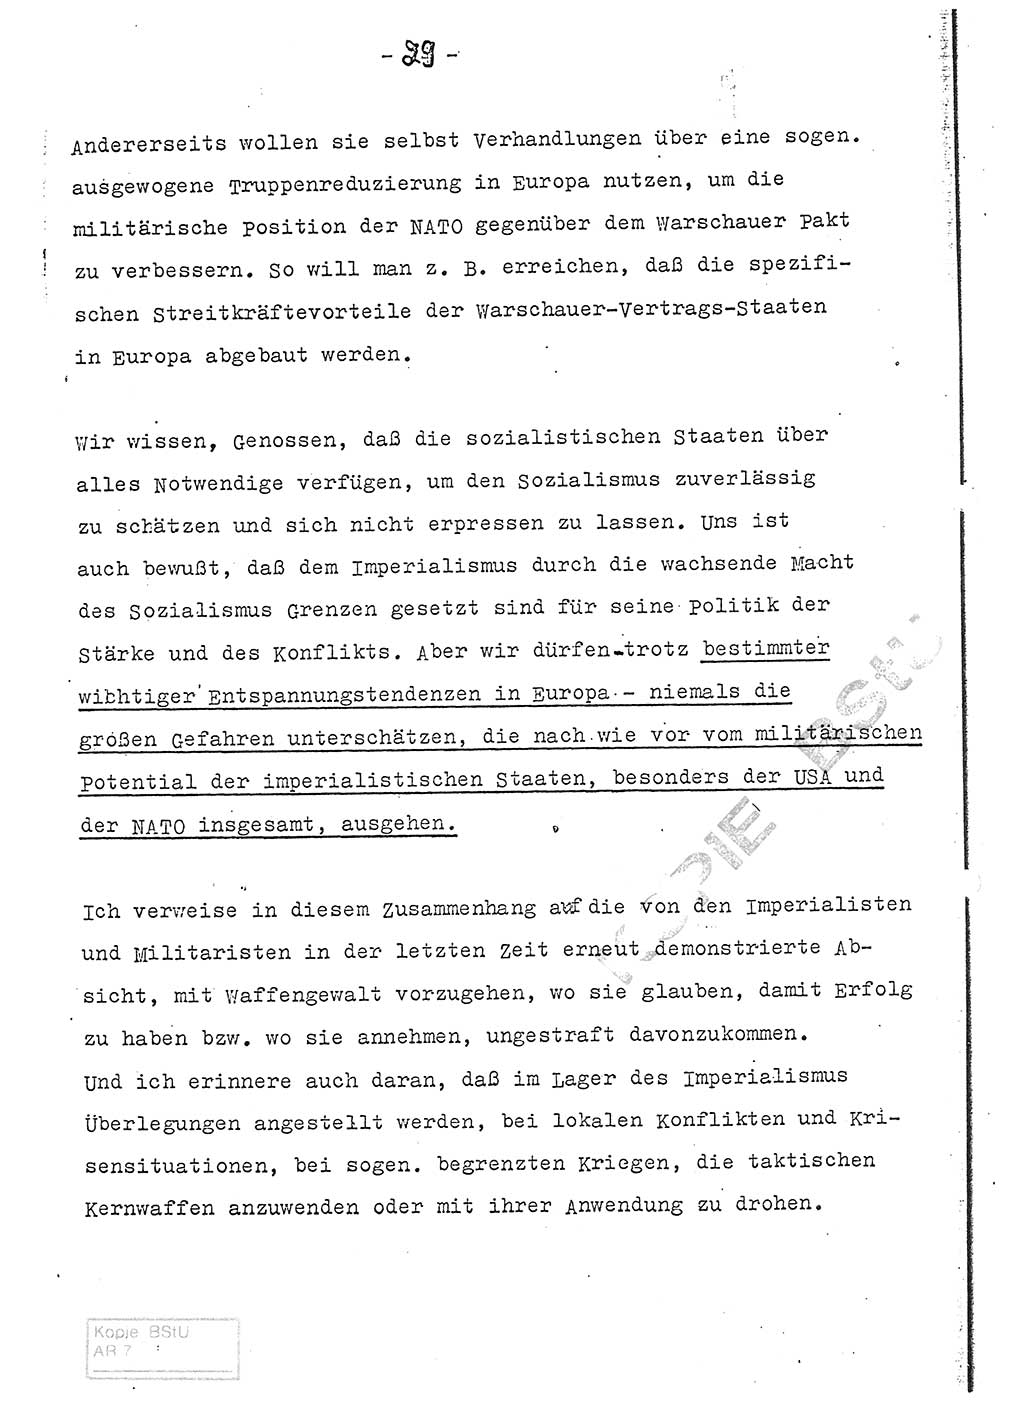 Referat (Entwurf) des Genossen Minister (Generaloberst Erich Mielke) auf der Dienstkonferenz 1972, Ministerium für Staatssicherheit (MfS) [Deutsche Demokratische Republik (DDR)], Der Minister, Geheime Verschlußsache (GVS) 008-150/72, Berlin 25.2.1972, Seite 29 (Ref. Entw. DK MfS DDR Min. GVS 008-150/72 1972, S. 29)